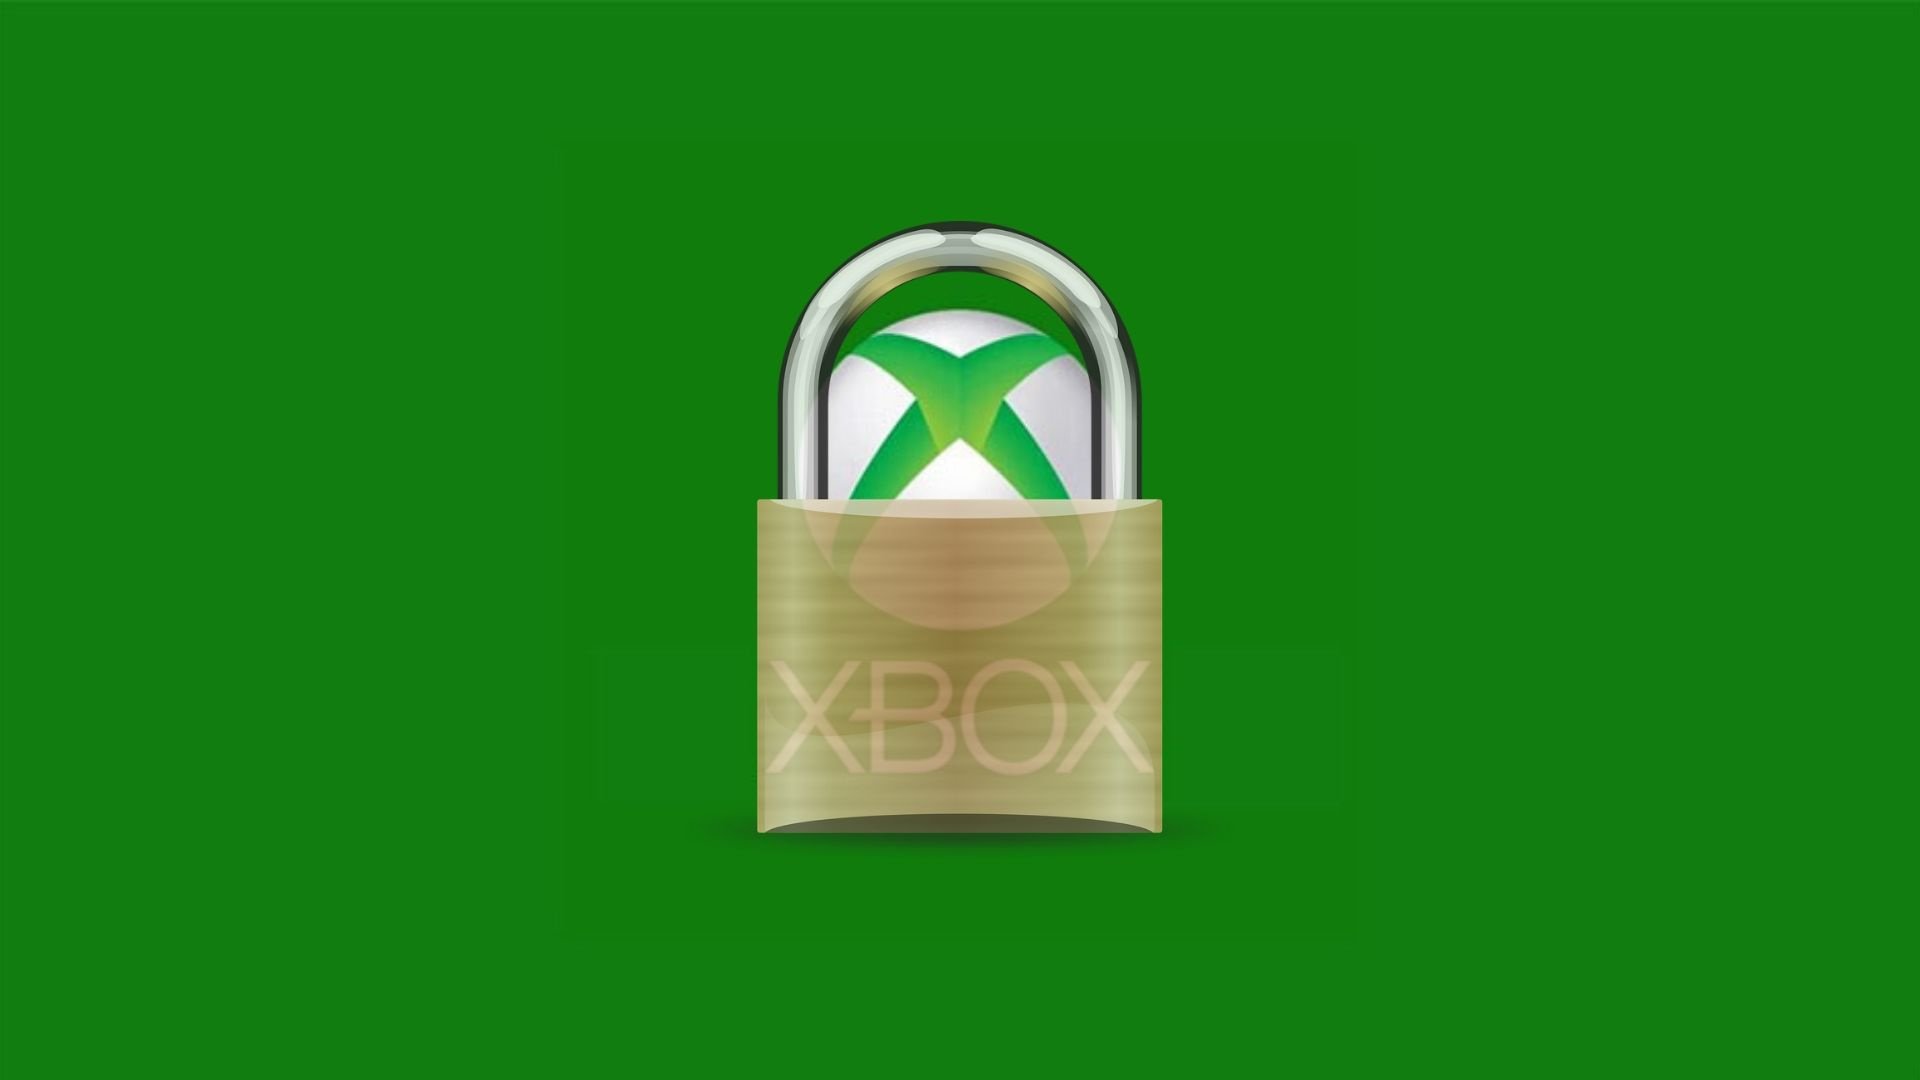 Enable 2fa Fortnite Xbox One